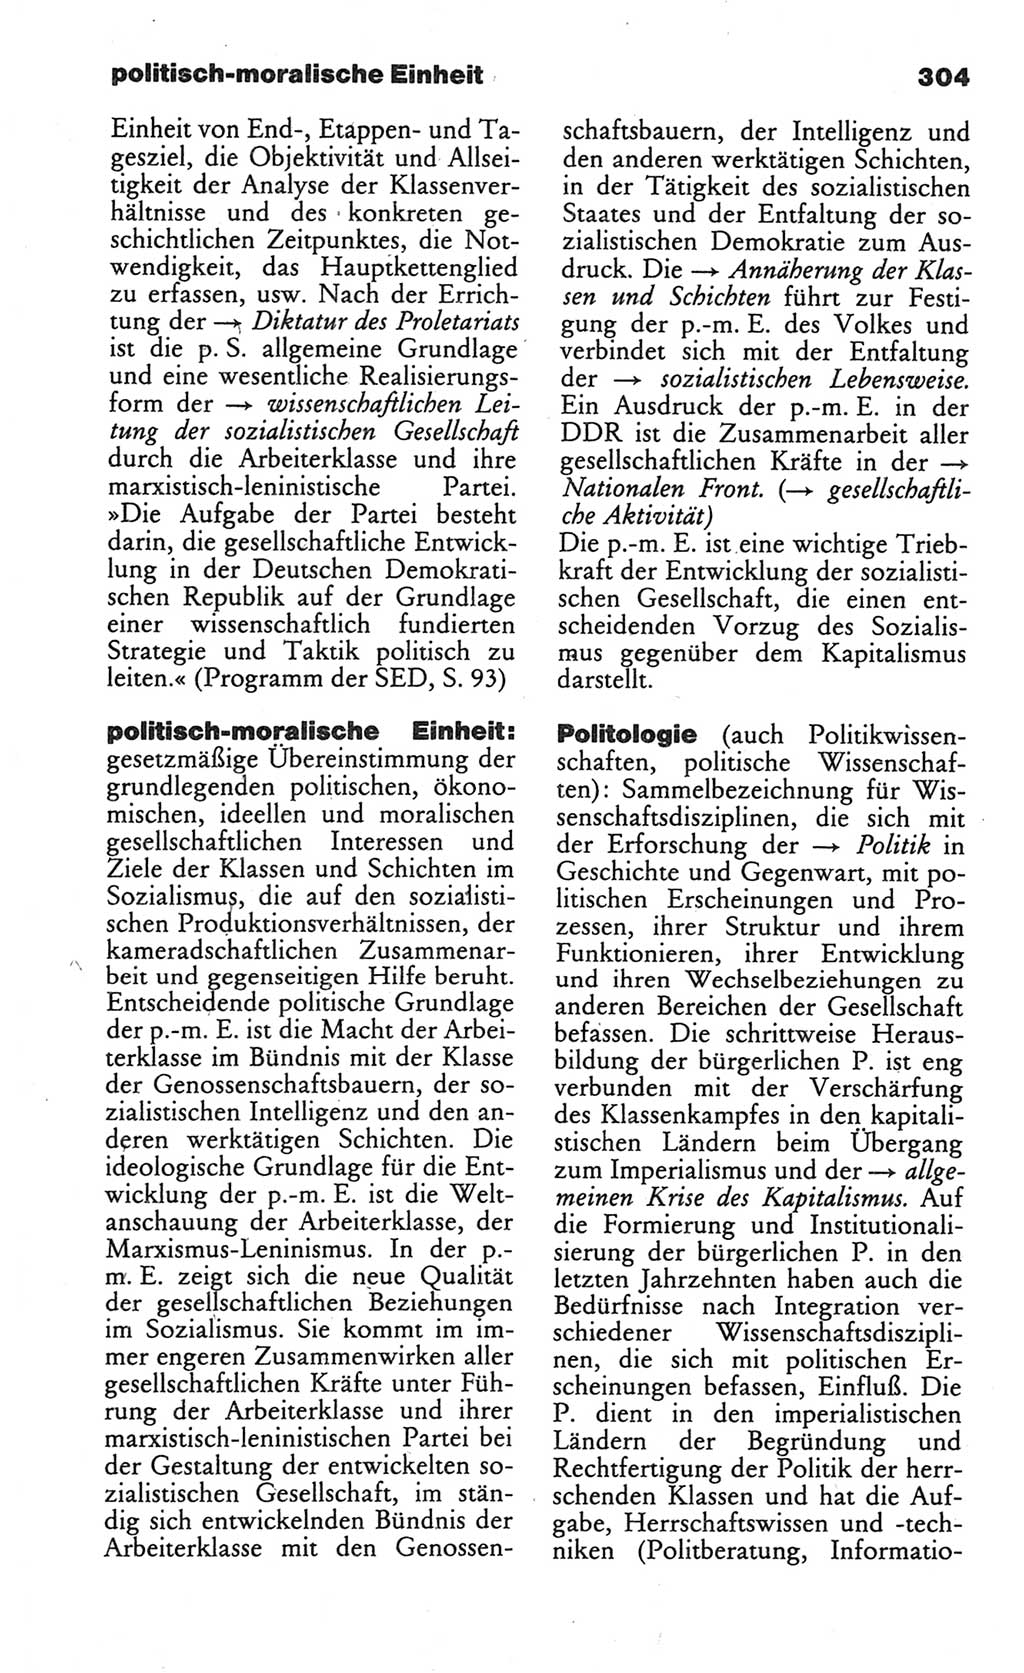 Wörterbuch des wissenschaftlichen Kommunismus [Deutsche Demokratische Republik (DDR)] 1984, Seite 304 (Wb. wiss. Komm. DDR 1984, S. 304)